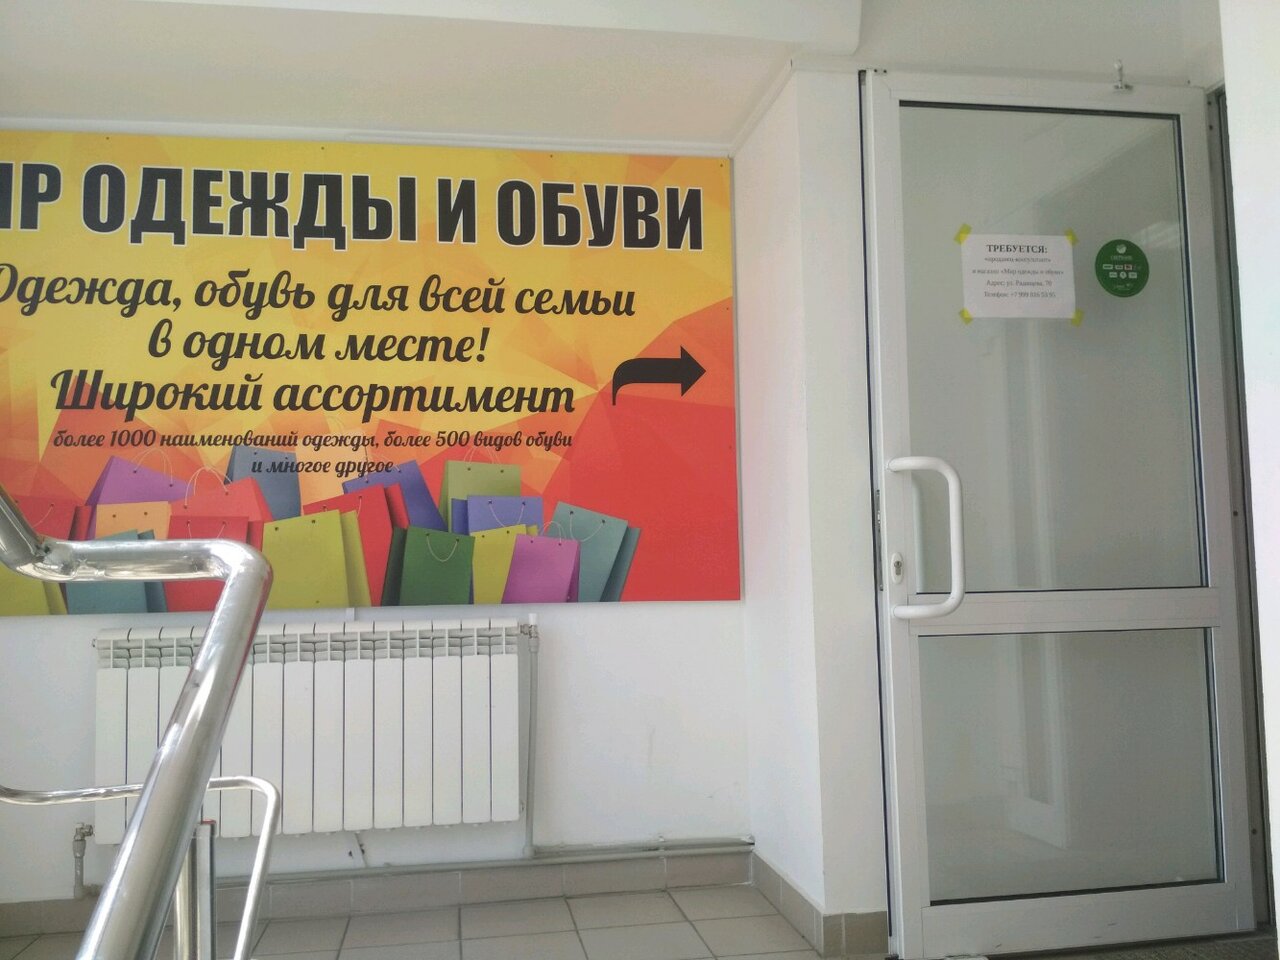 Магазин Обуви Ульяновск Каталог